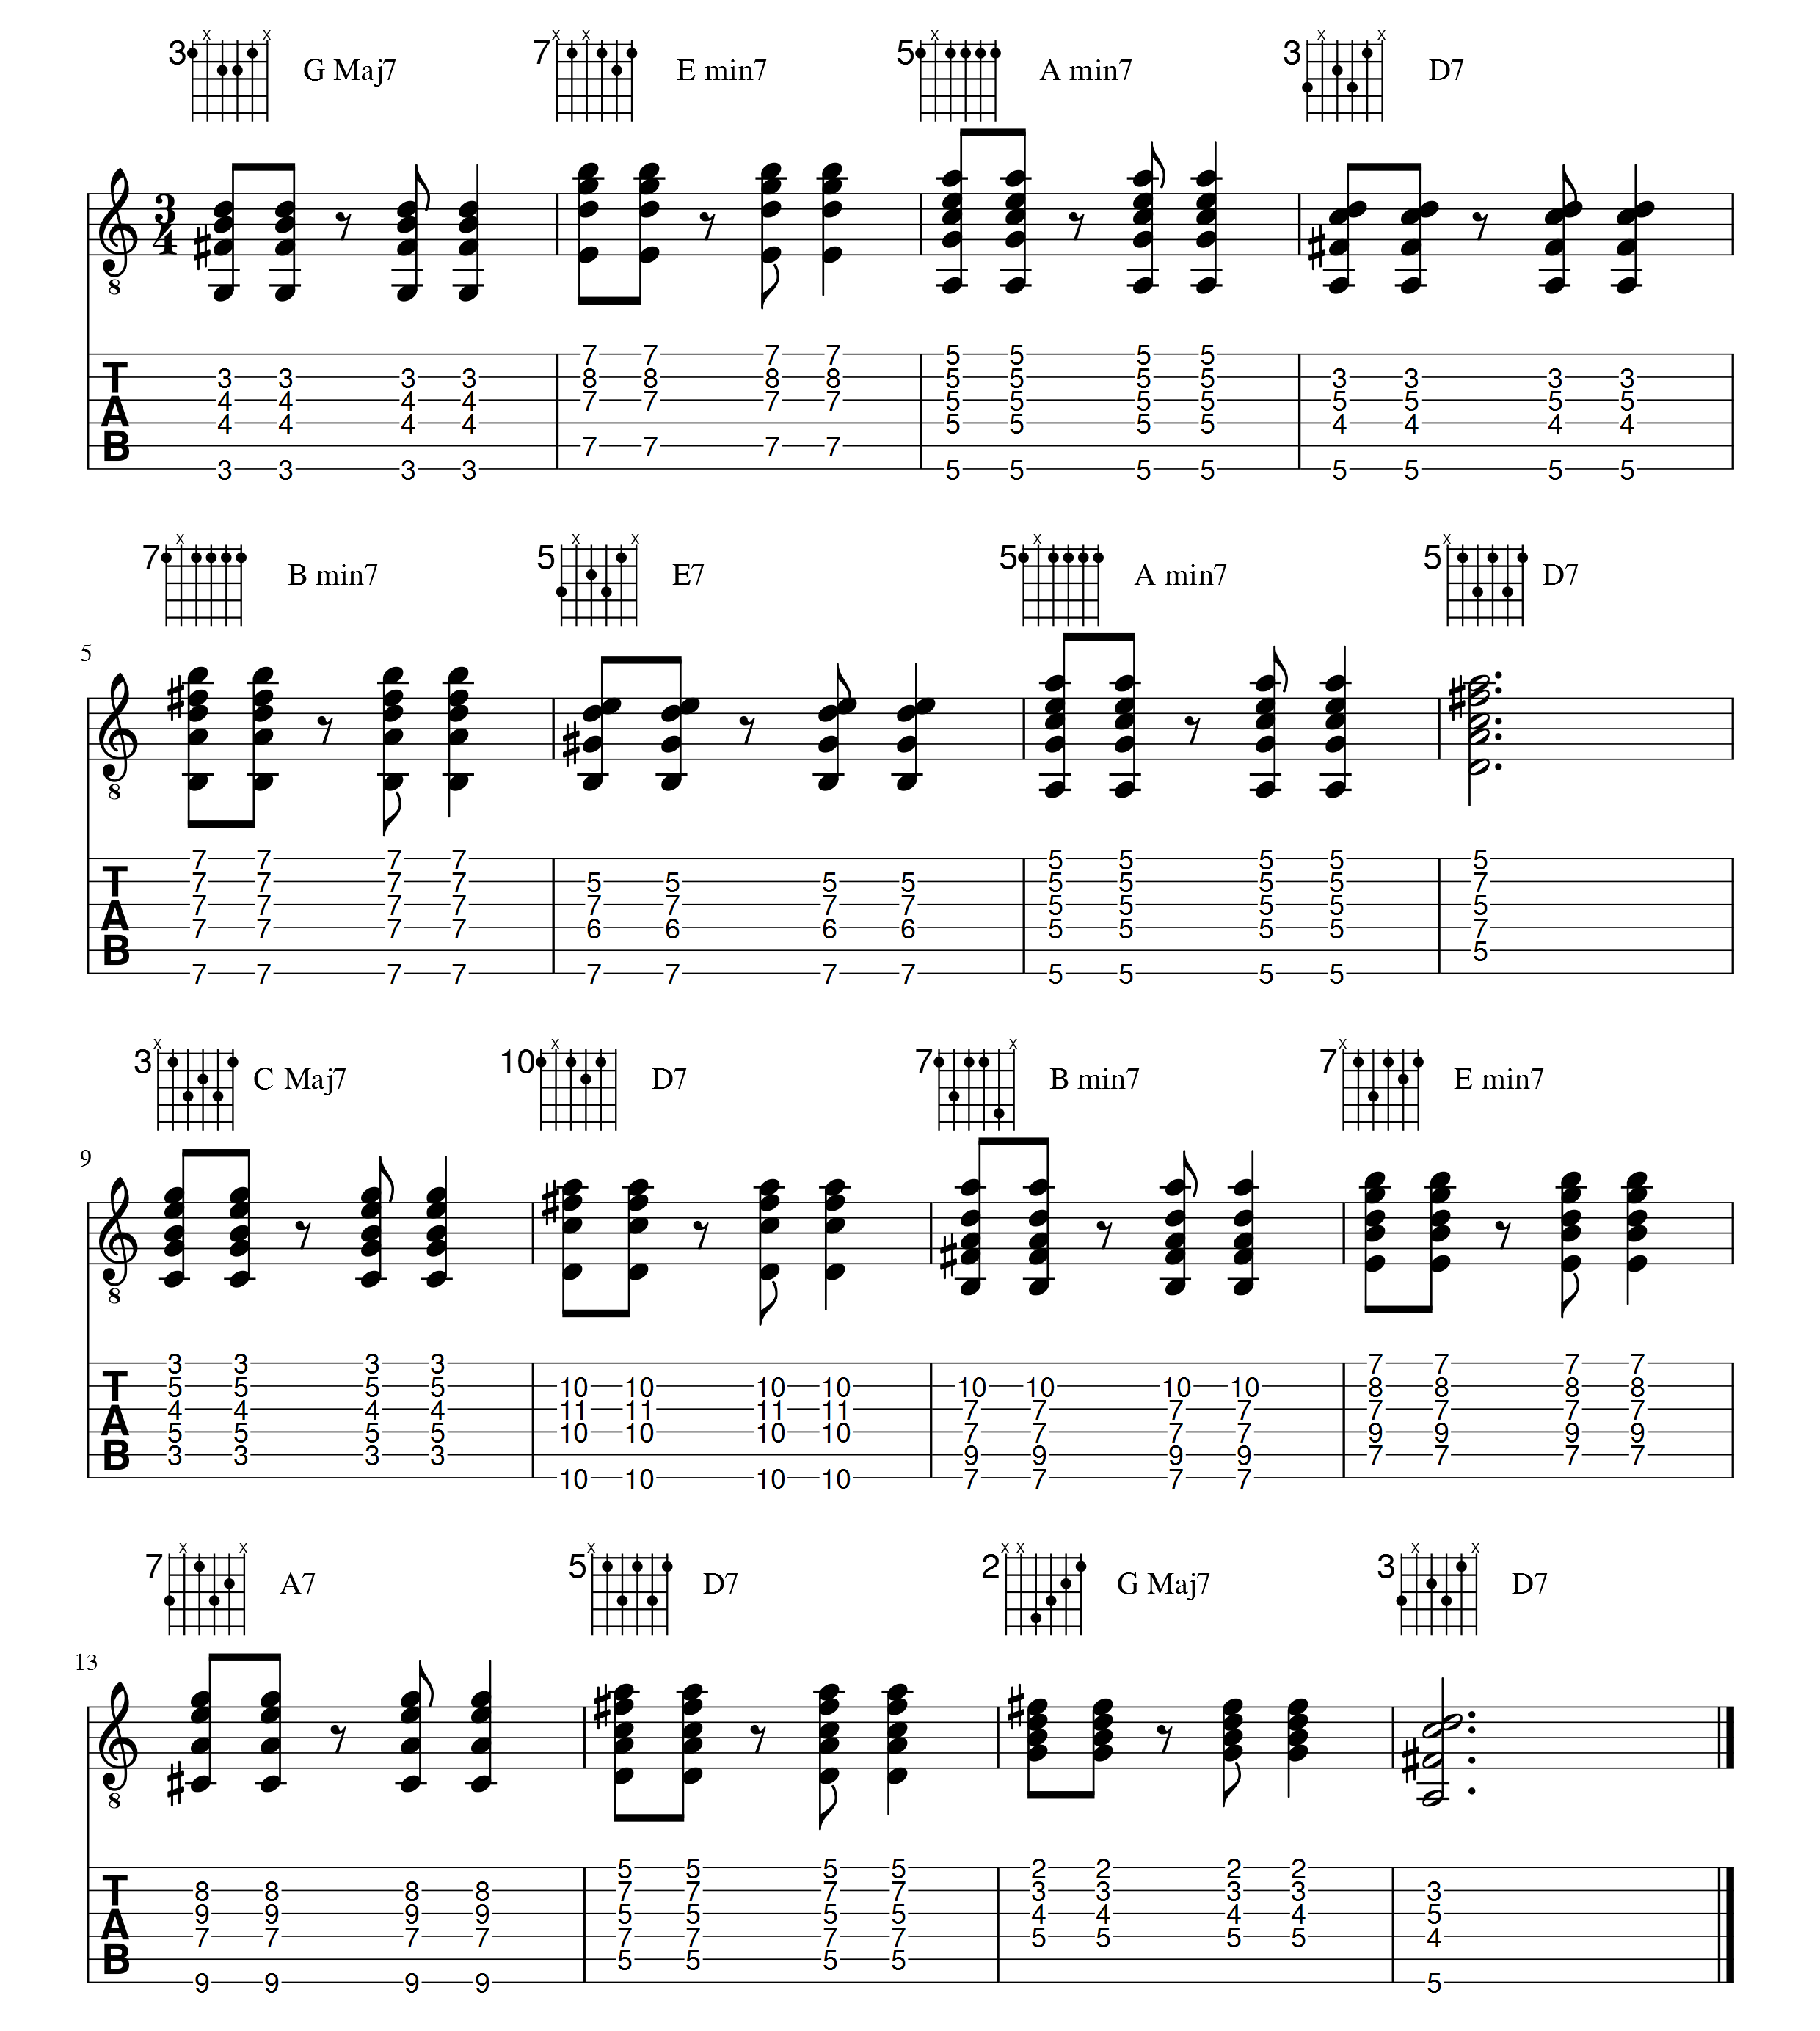 tablature progression accord jazz septieme guitar trainer ligne 1 apprendre la guitare